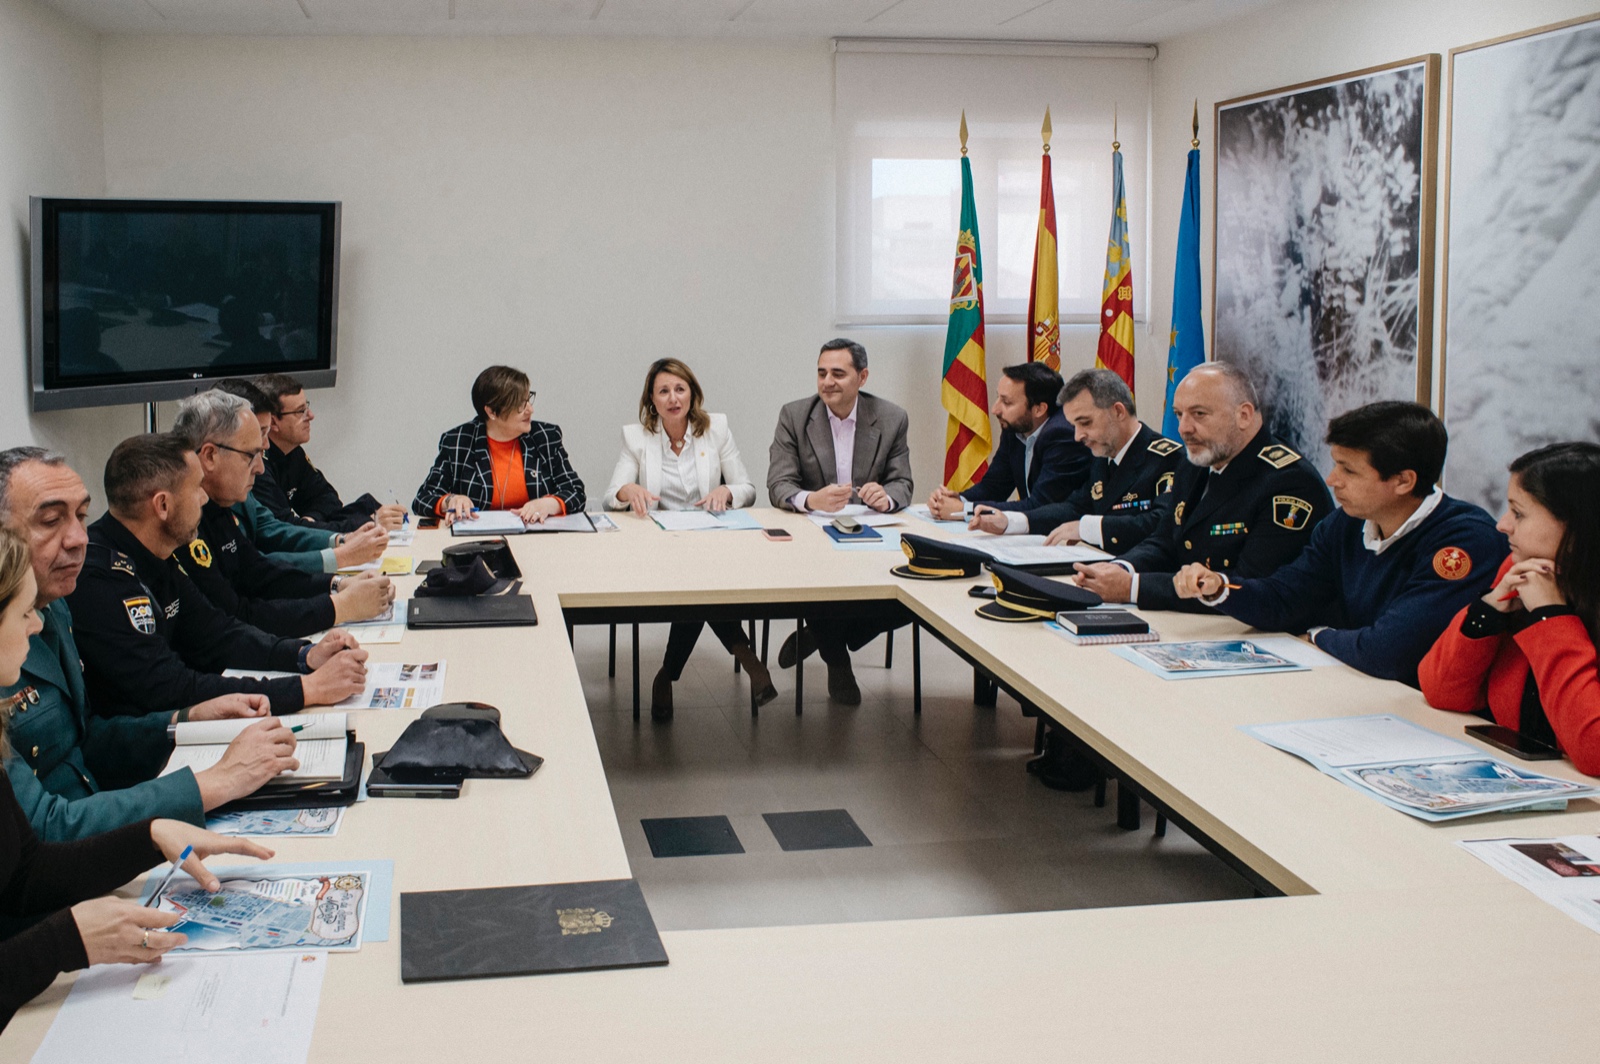 Castelló prepara el dispositiu de seguretat i emergències per a Escala a Castelló i el Cap de setmana Mariner que es celebra del 5 al 8 d’abril en el Grau